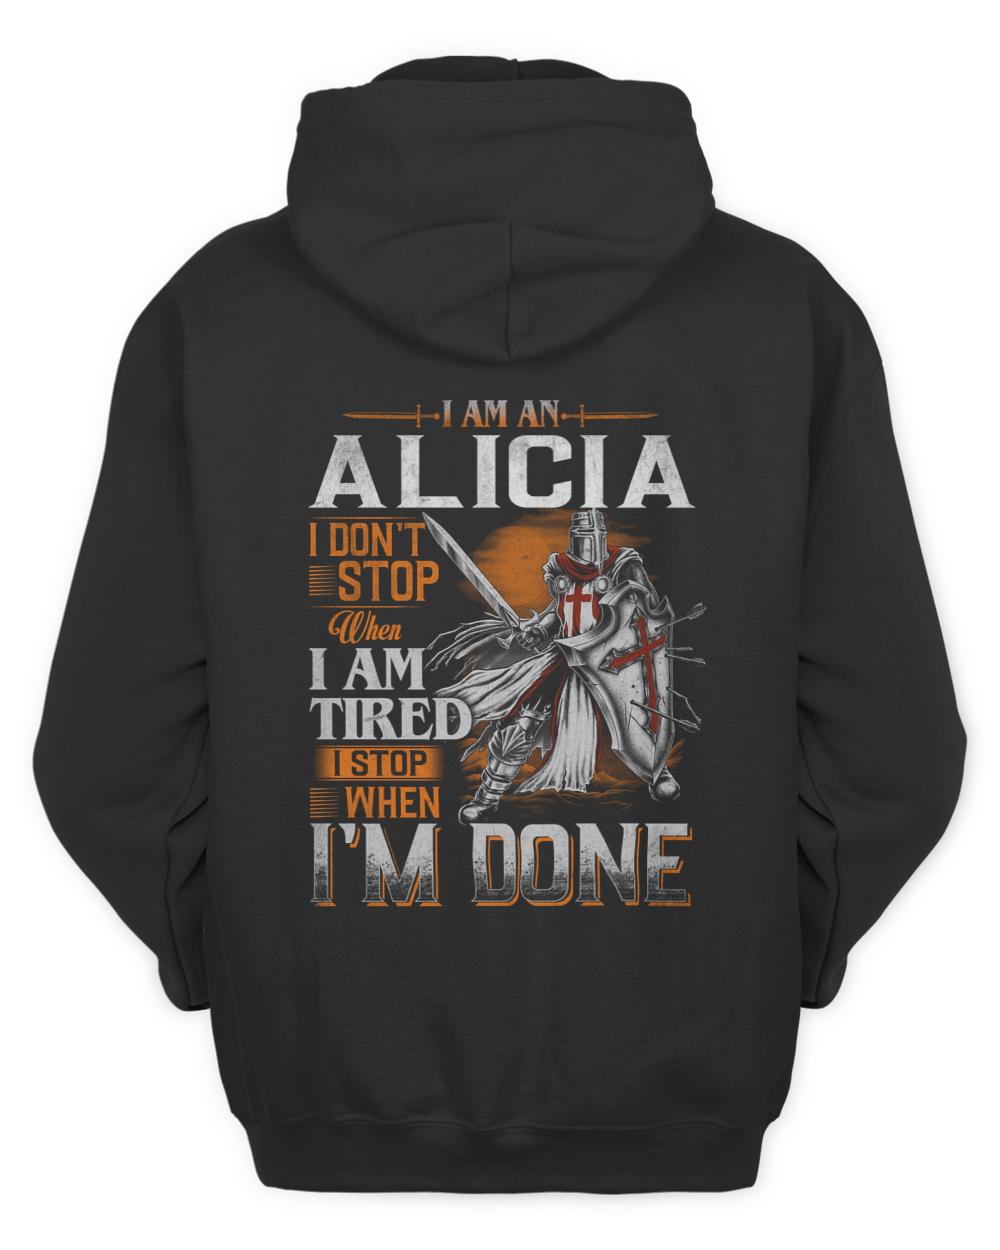 ALICIA-13K-57-01